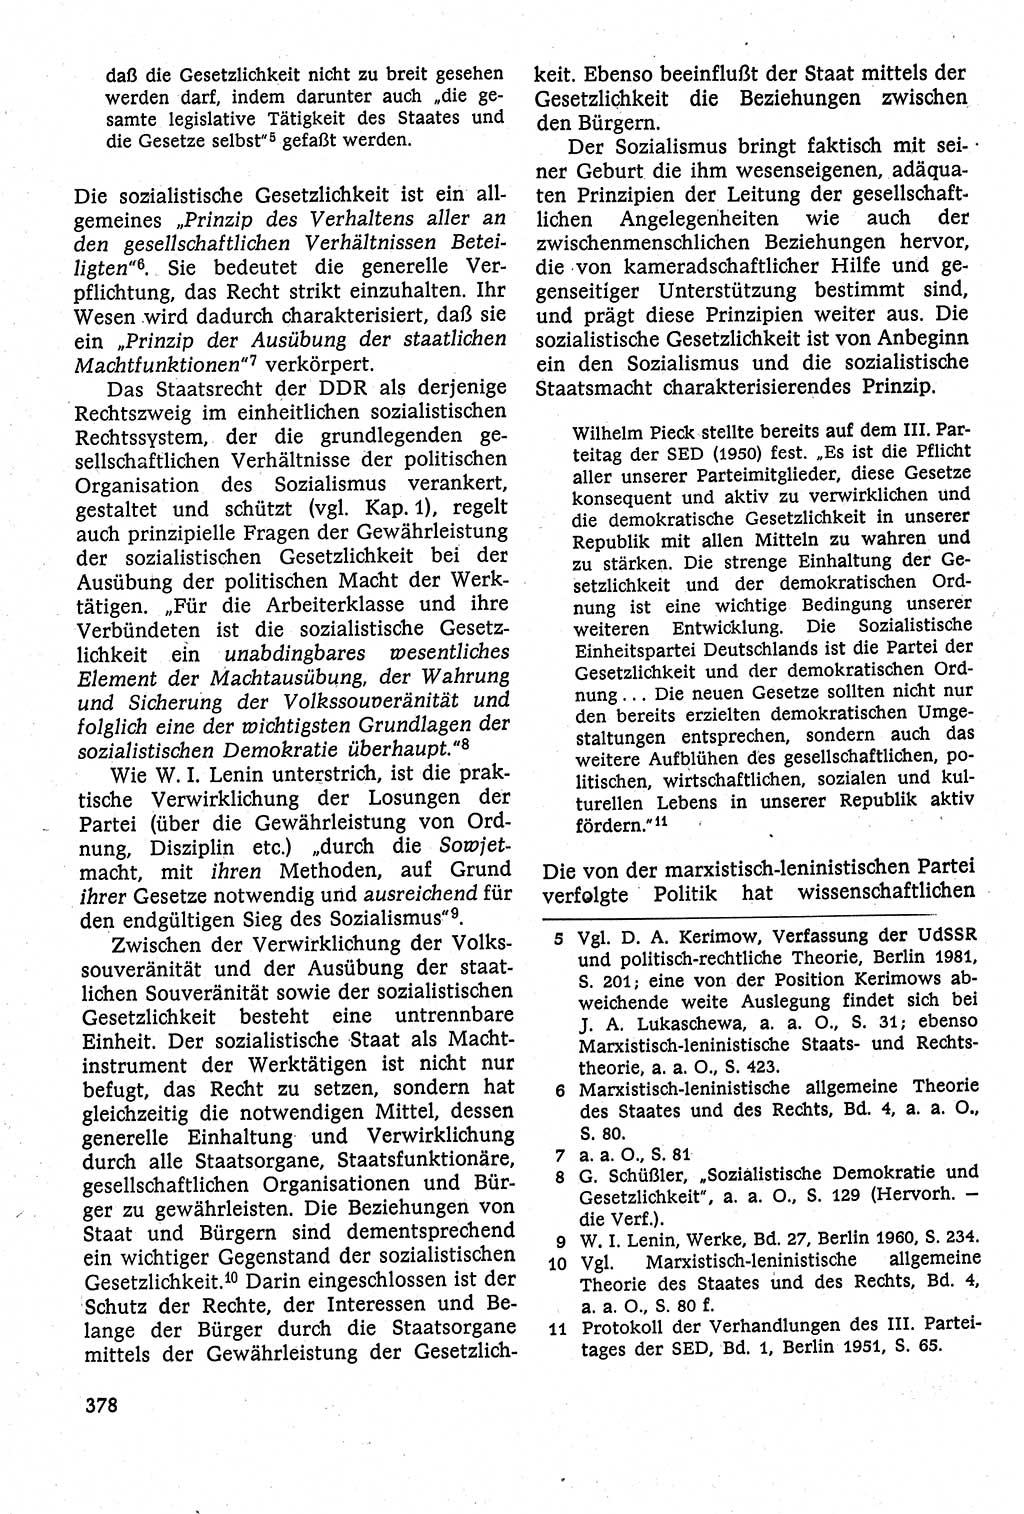 Staatsrecht der DDR [Deutsche Demokratische Republik (DDR)], Lehrbuch 1984, Seite 378 (St.-R. DDR Lb. 1984, S. 378)